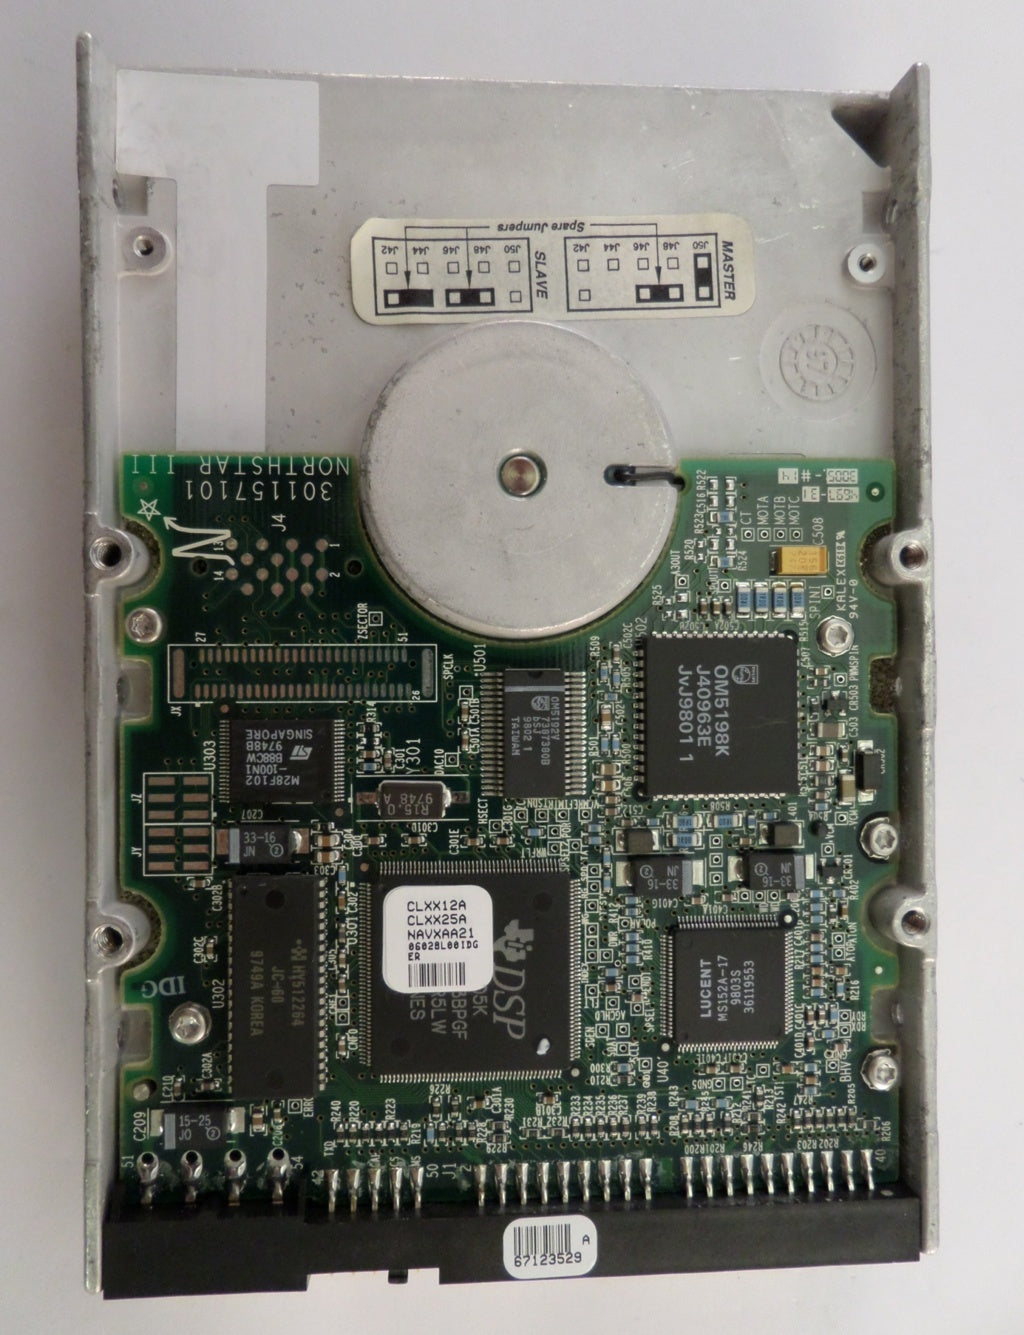 8B036J0 - NEC / Maxtor 36GB SCSI 80 Pin 10Krpm 3.5" HDD - Refurbished